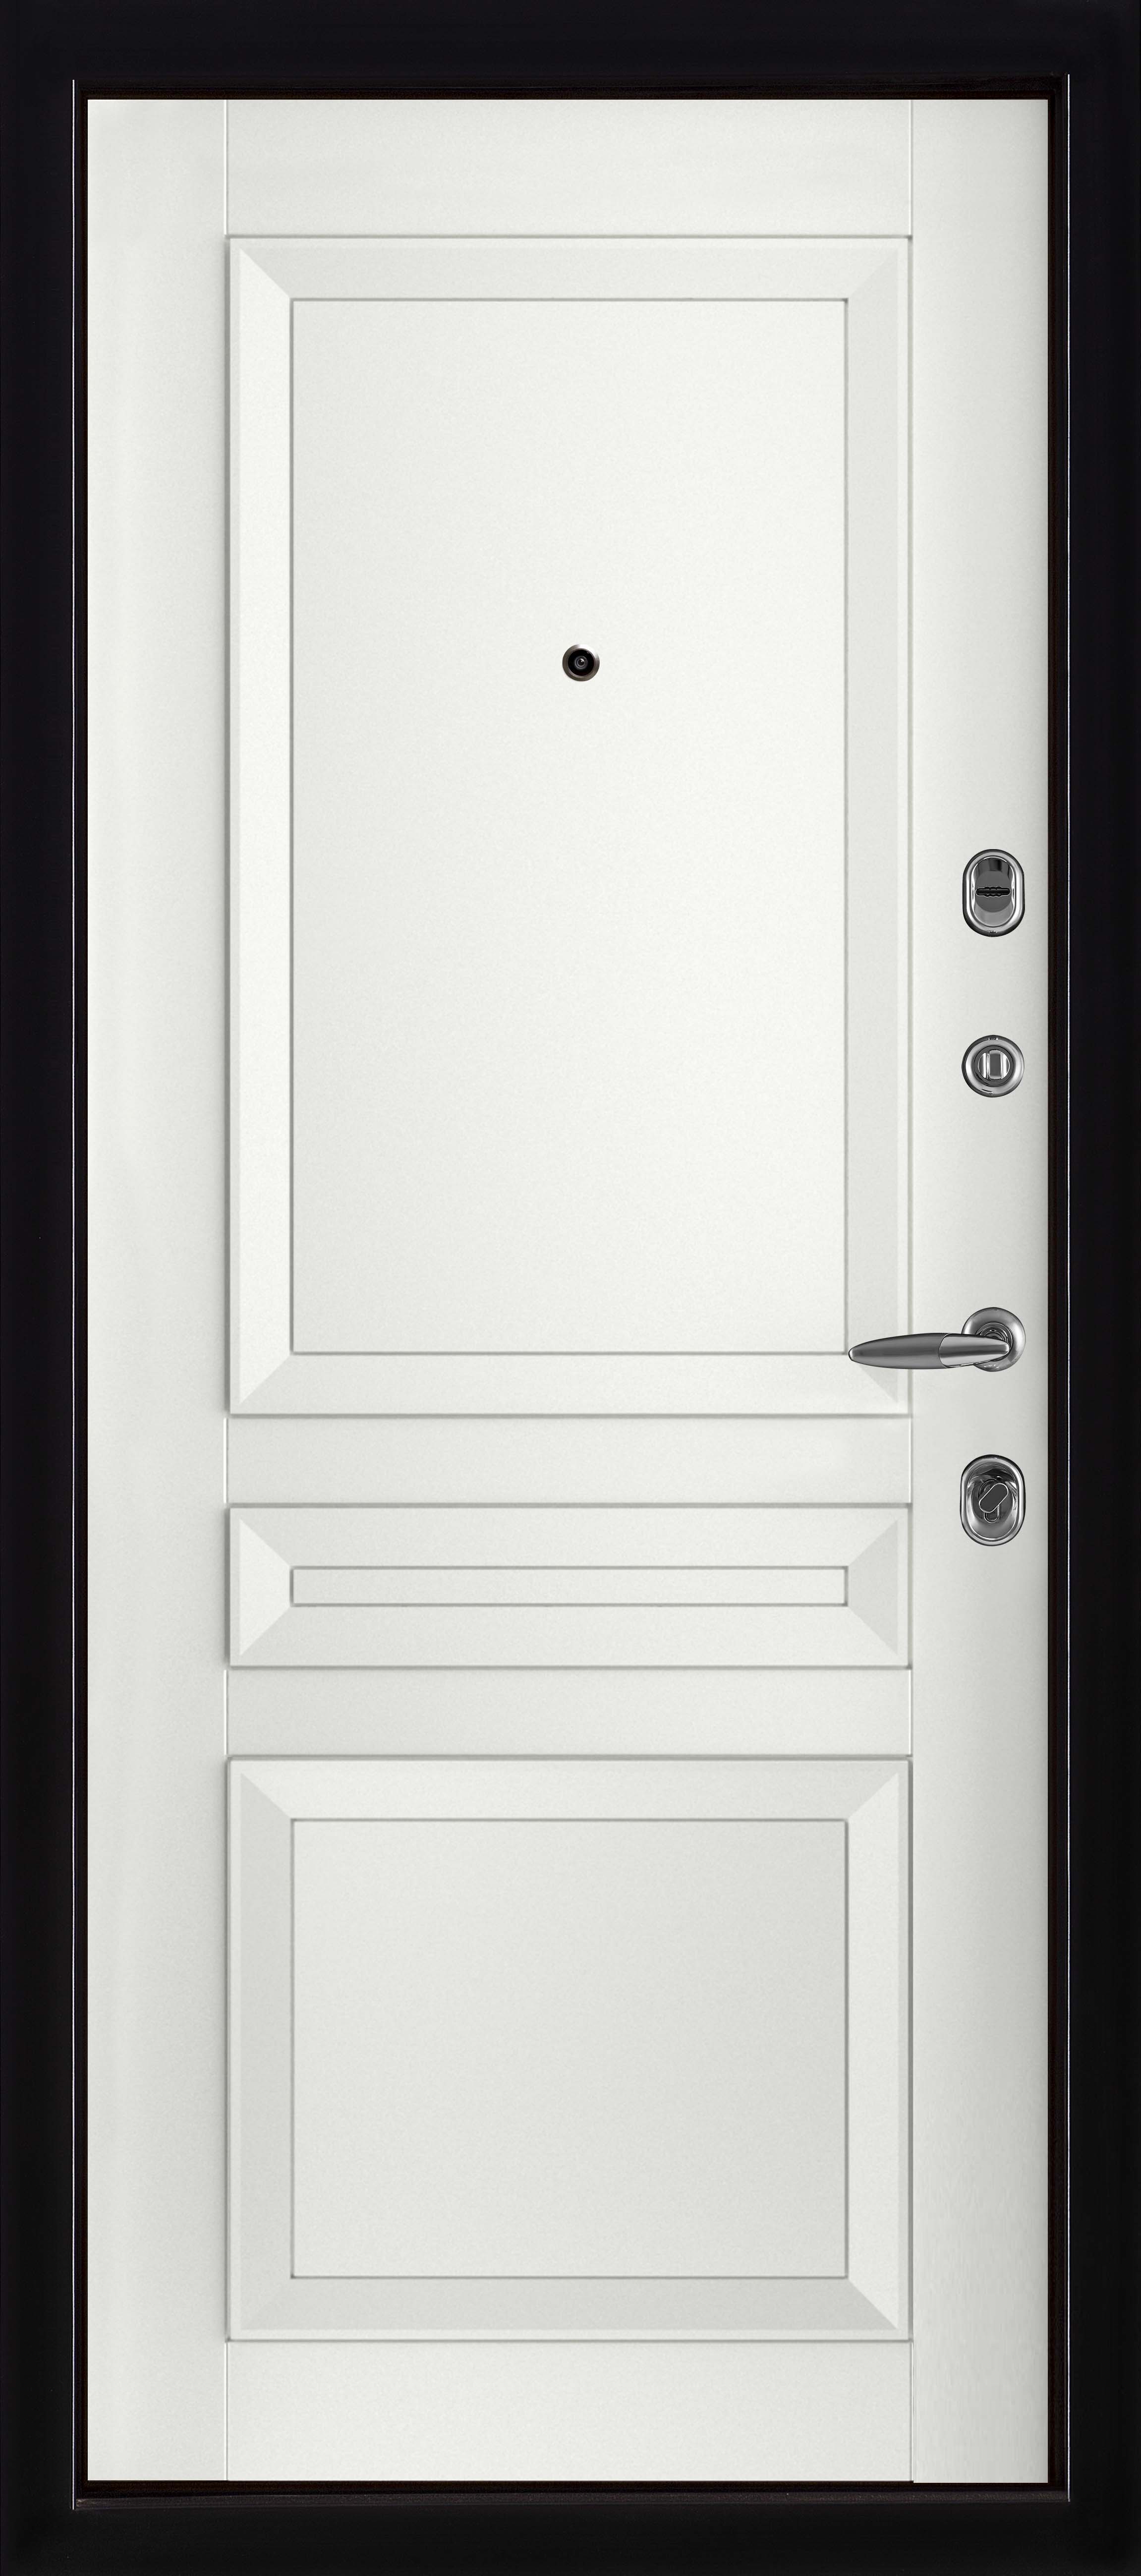 Входная металлическая дверь с терморазрывом Термо 3 антик медь / Авангард-3 эмаль белая